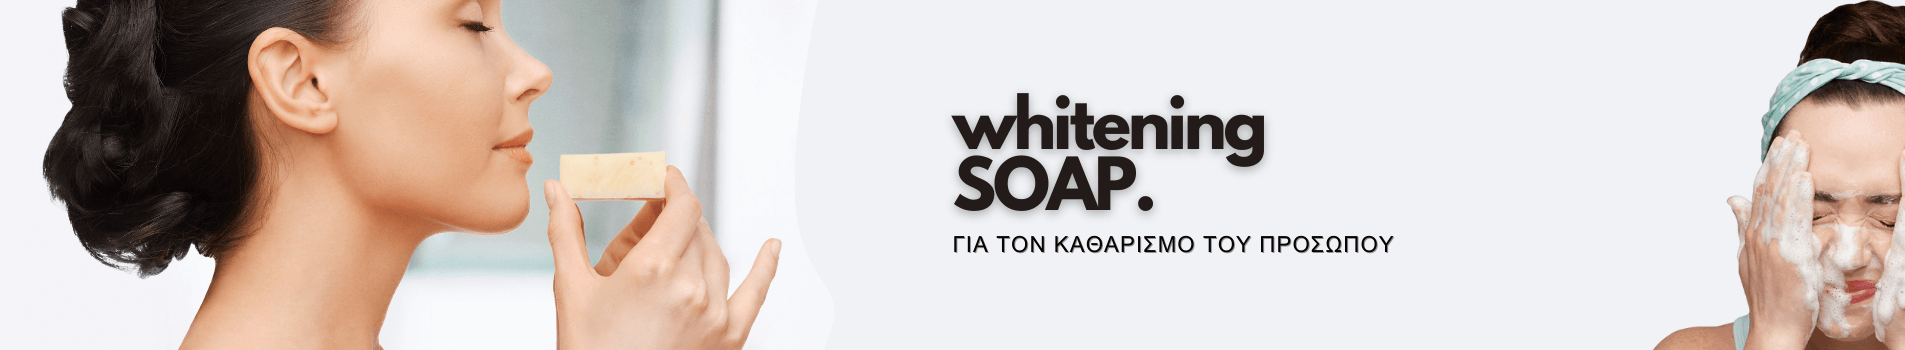 banner whitening soap